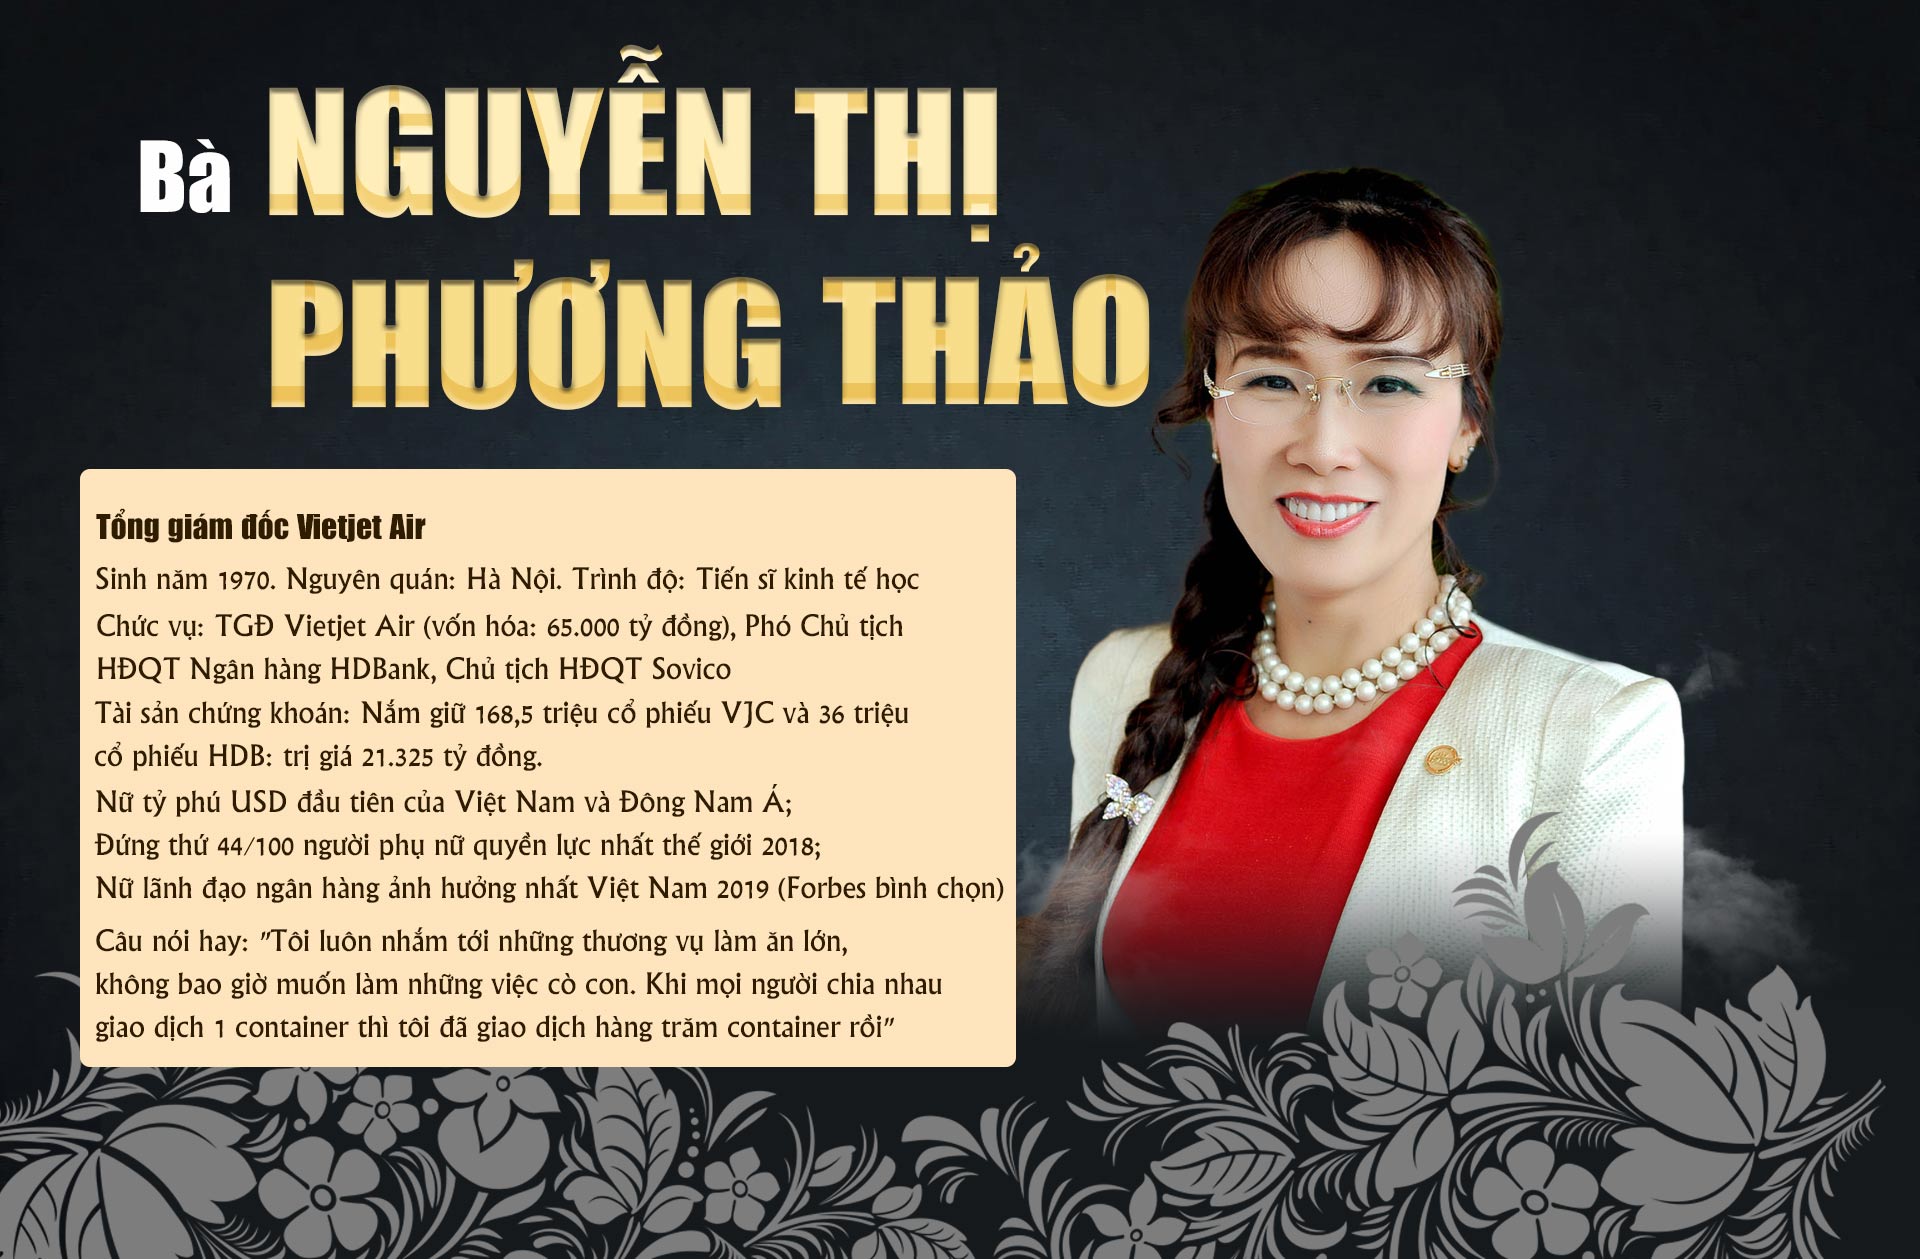 10 phụ nữ Việt gây choáng bởi sự giàu có, giỏi giang và quyền lực - 2